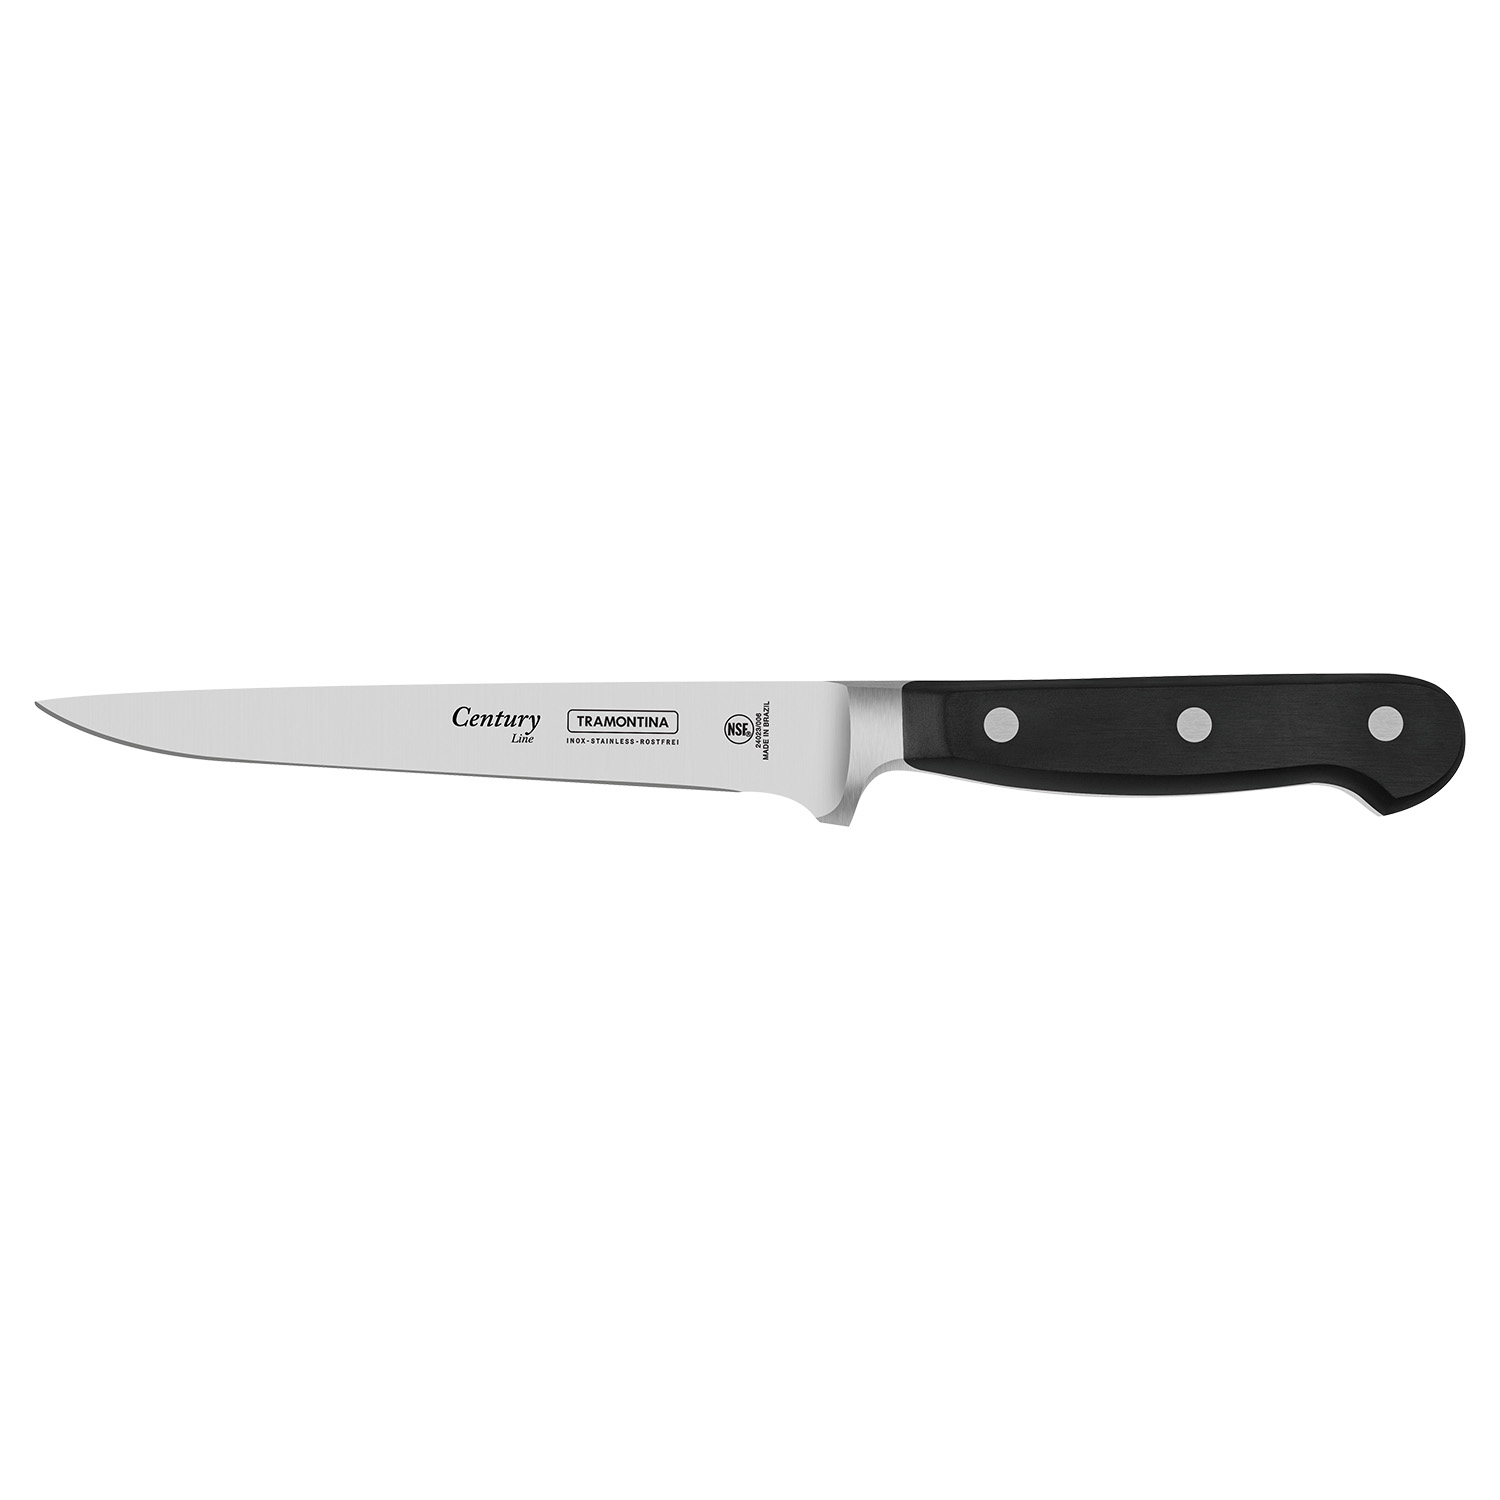 Нож Century 153мм/278мм кухонный филейный гибкий черный